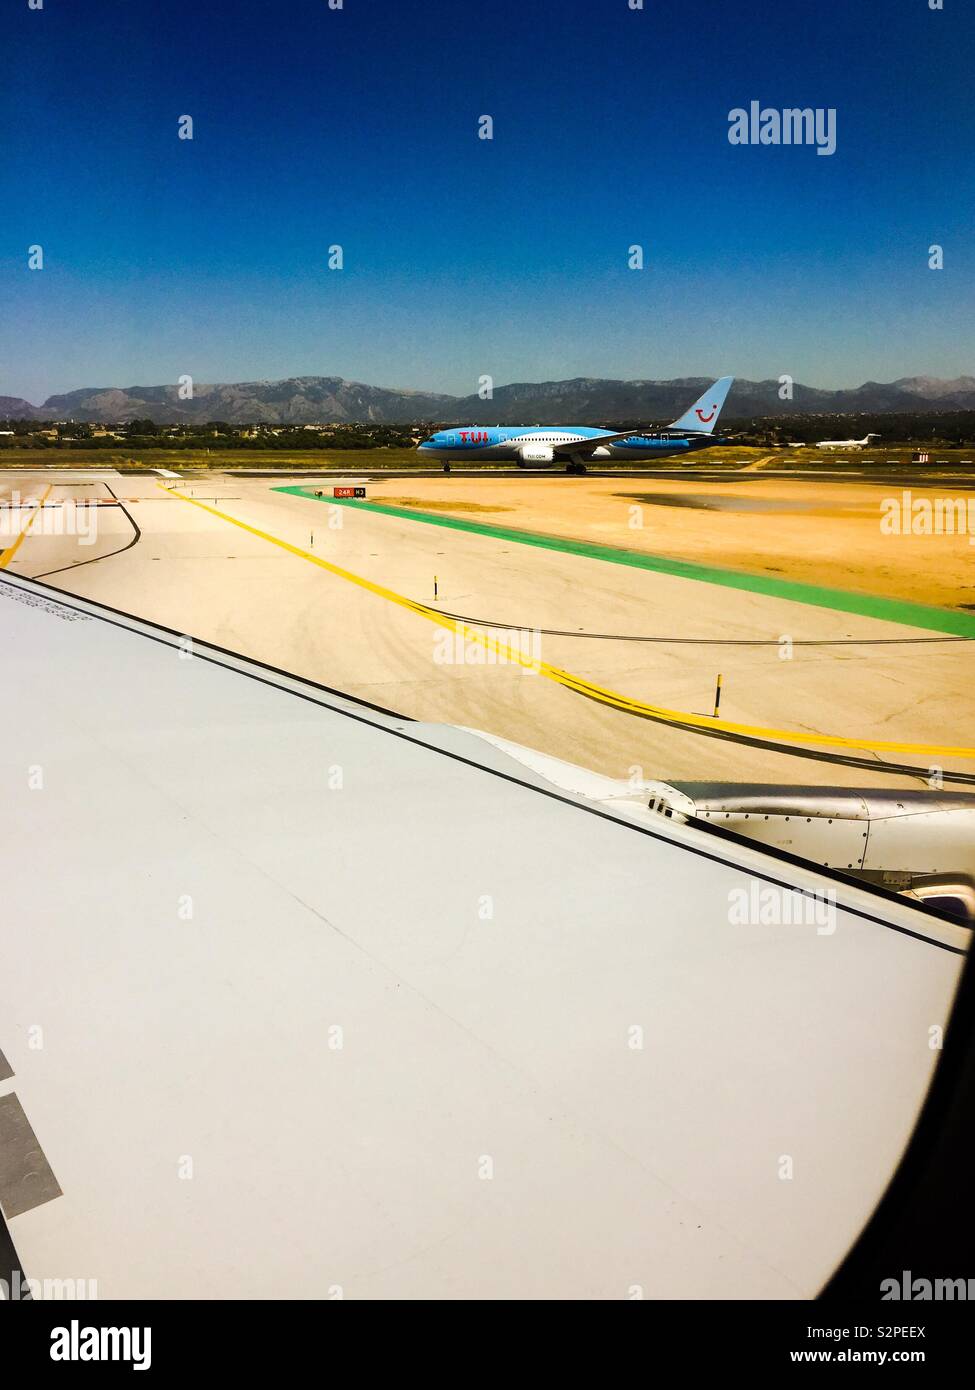 Palma de Mallorca airport Stock Photo